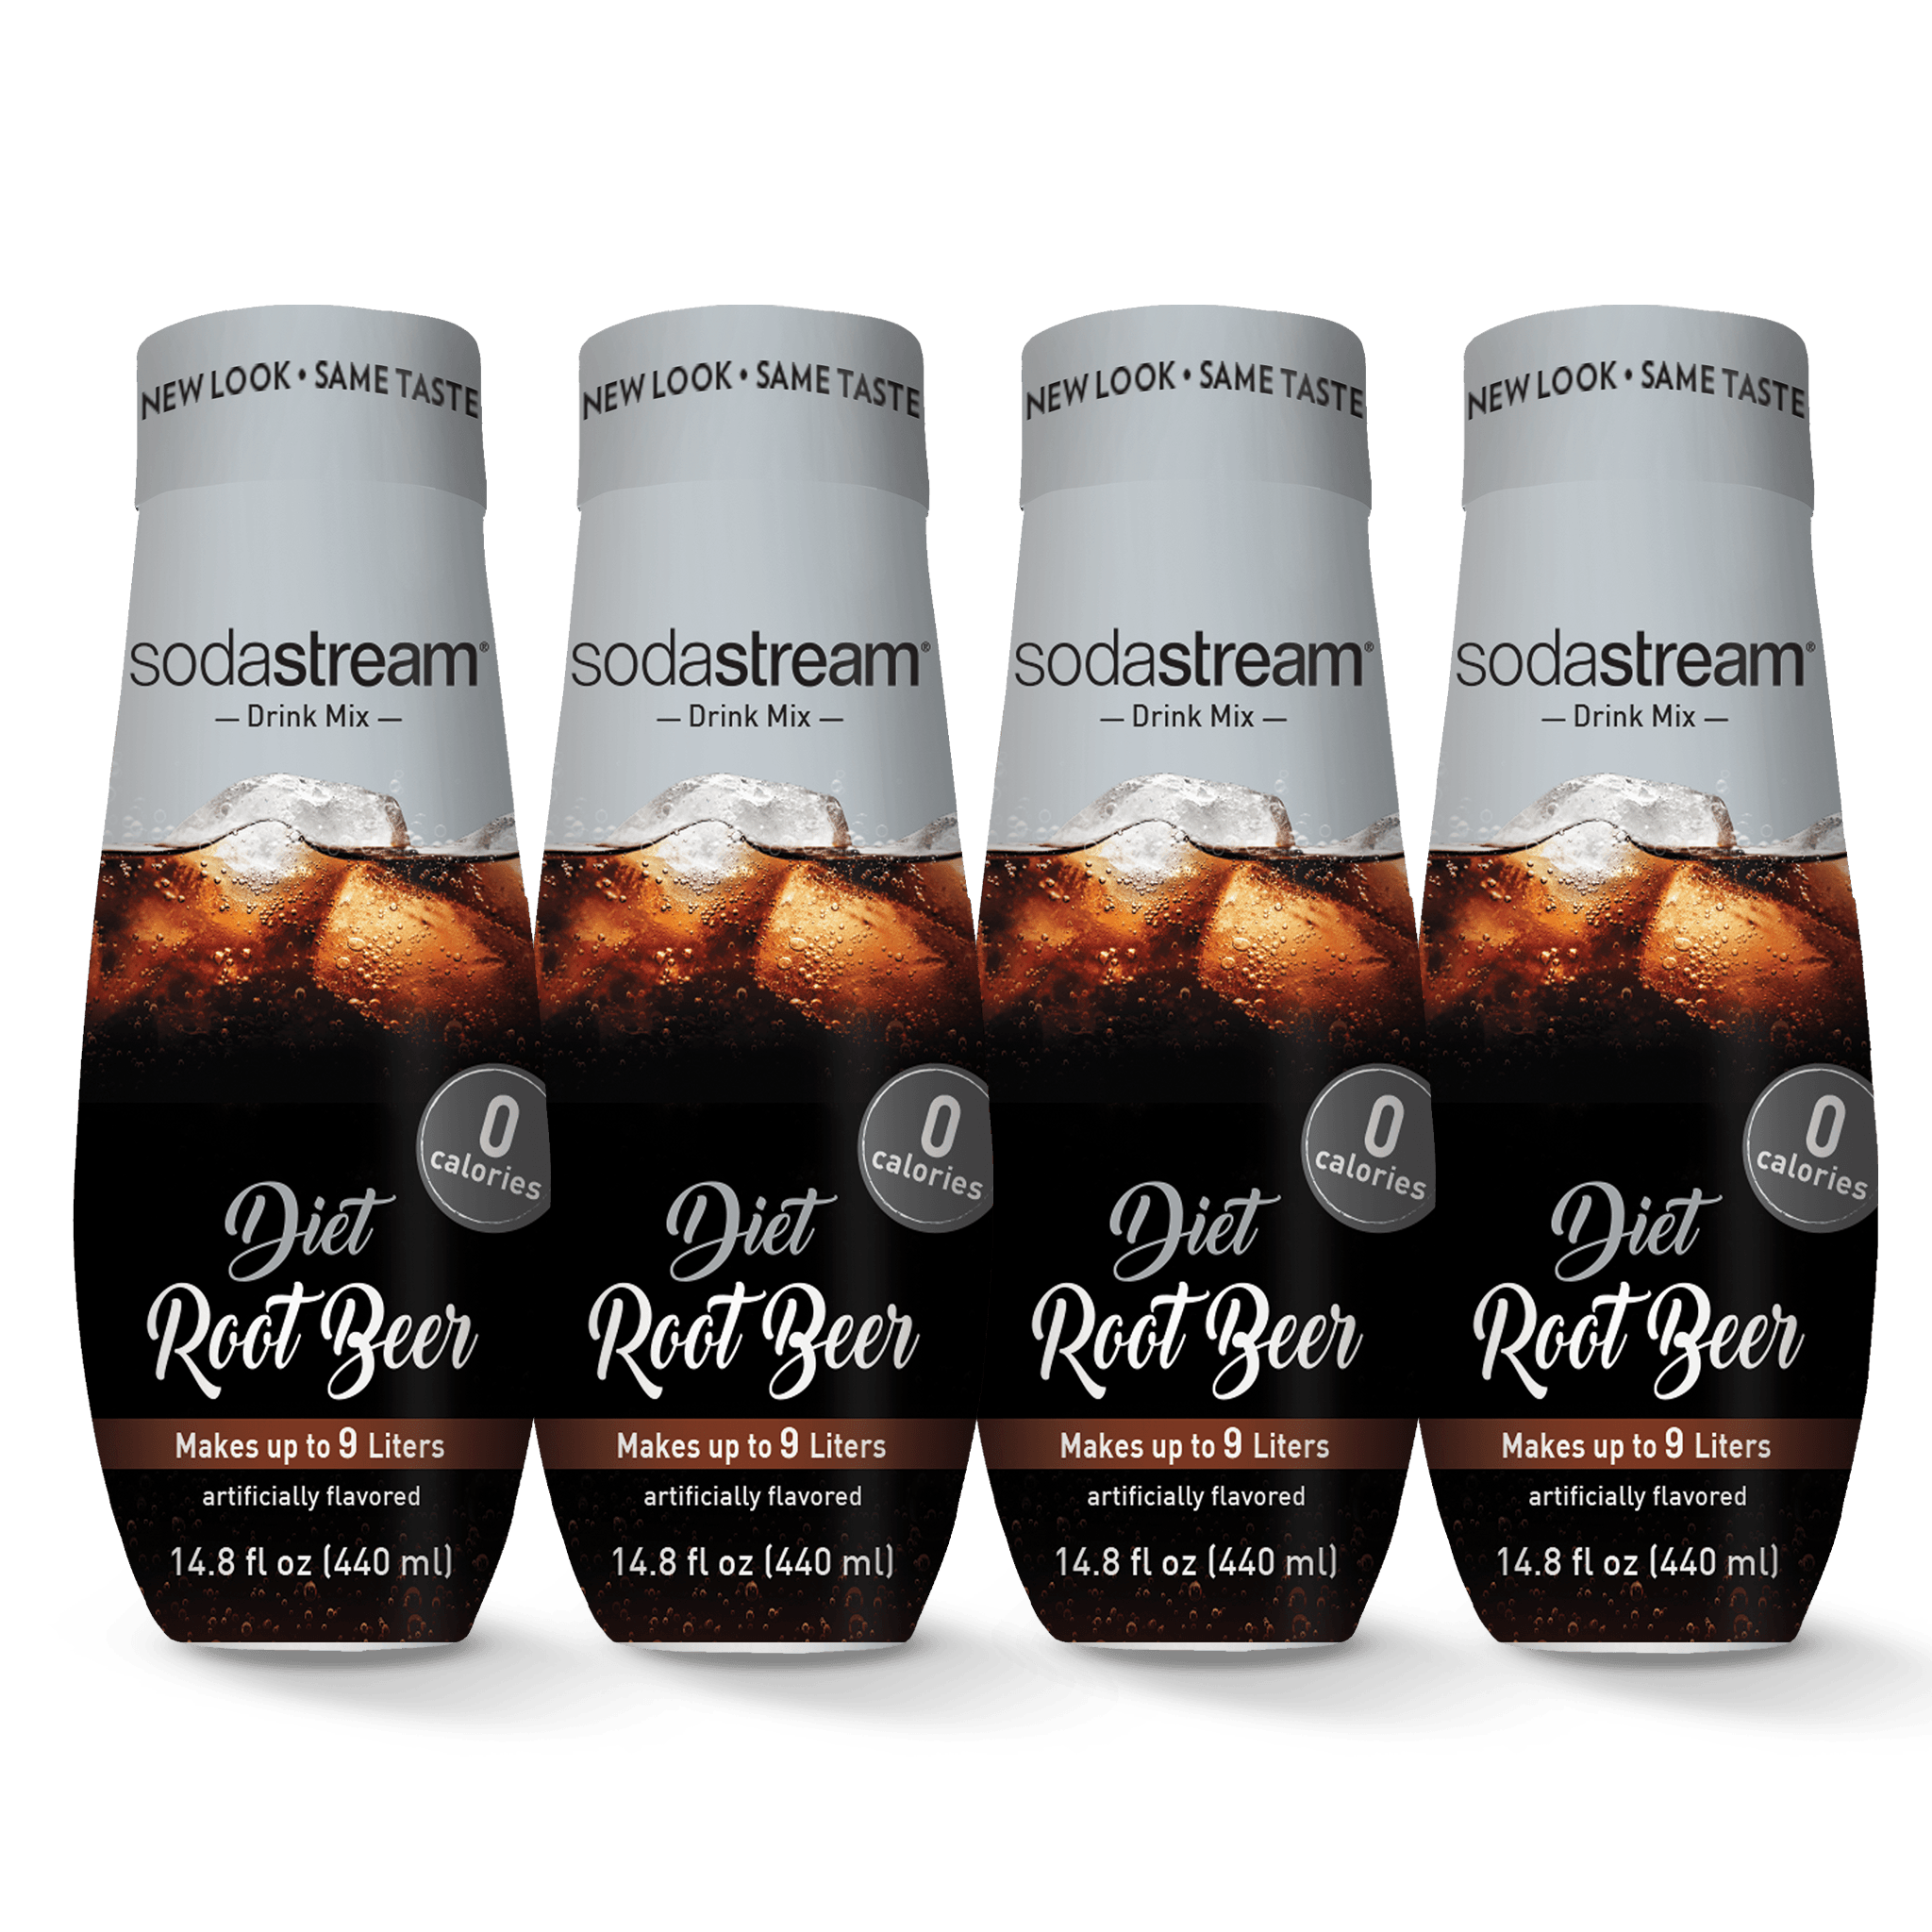 Diet Root Beer 4 Pack sodastream